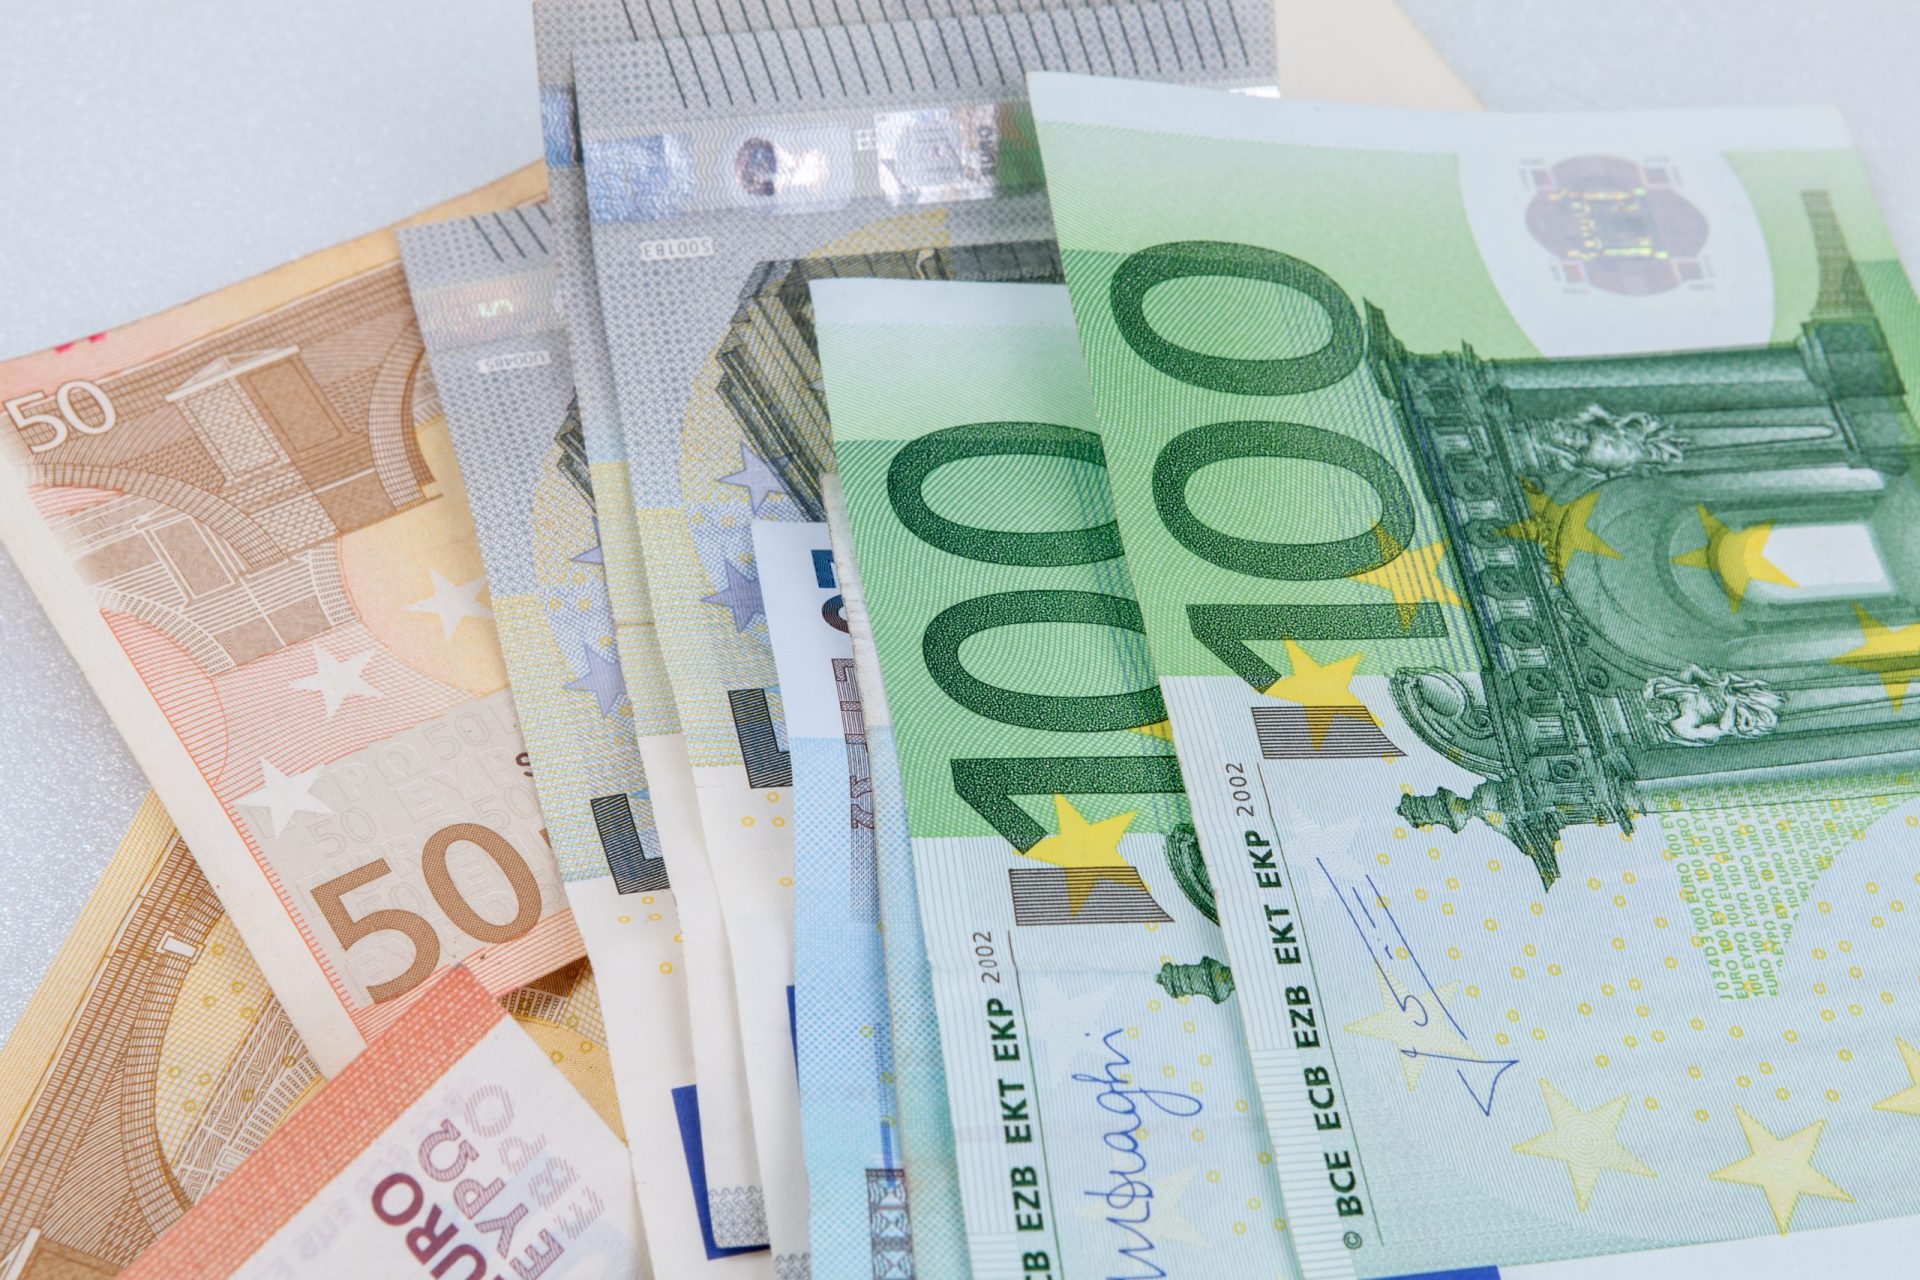 Arrumador de carros encontrou sete mil euros… e devolveu-os